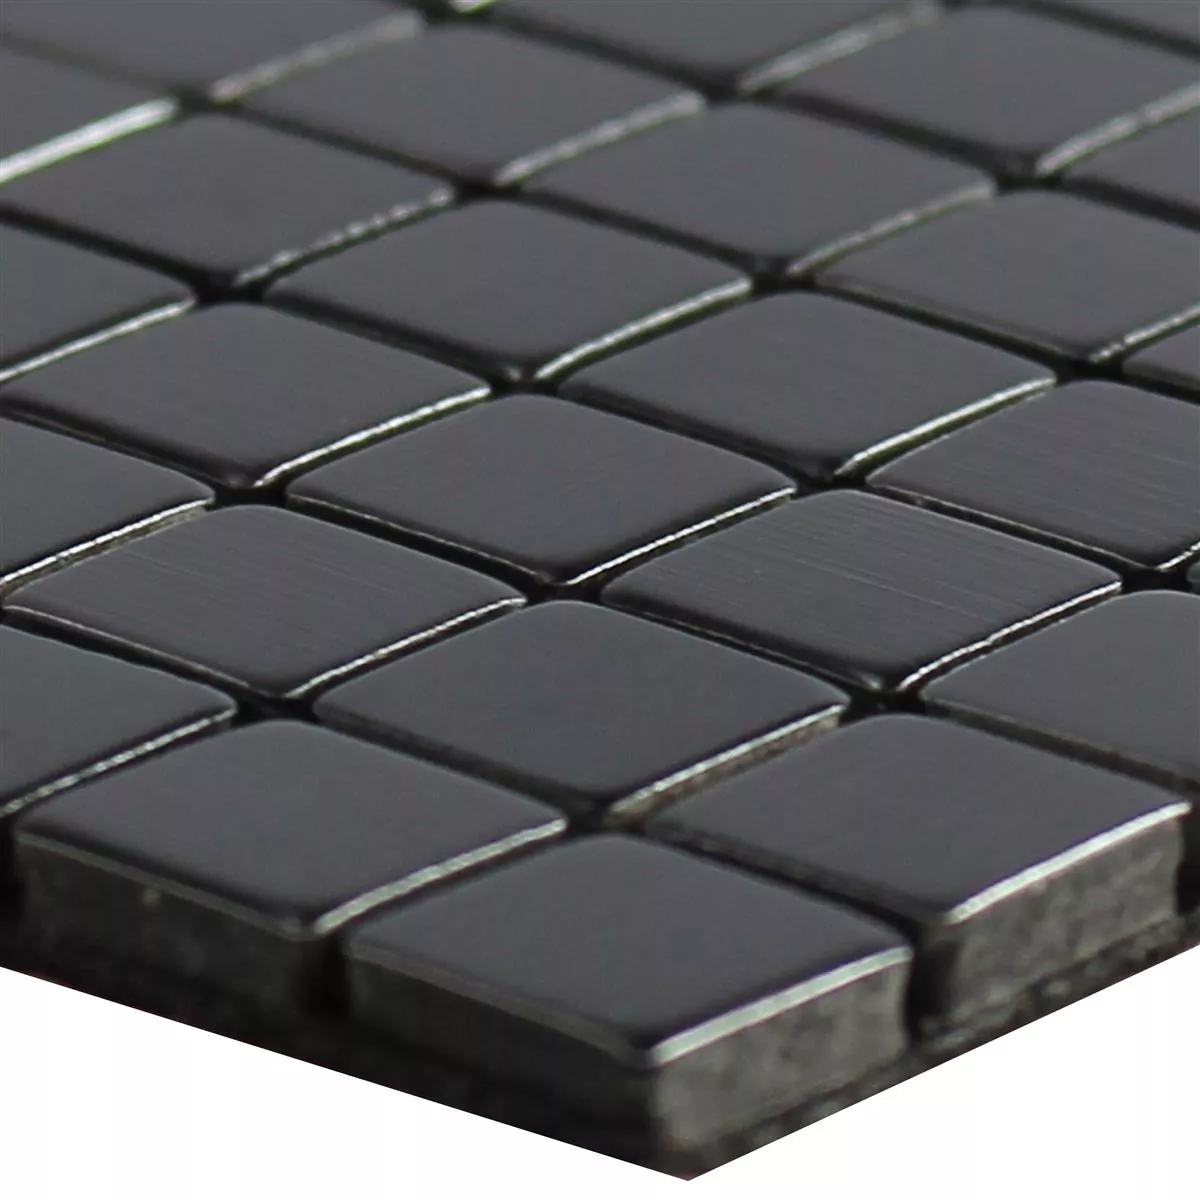 Πρότυπο από Mέταλλο Ψηφιδωτά Πλακάκια Wygon Aυτοκόλλητες Μαύρος 10mm